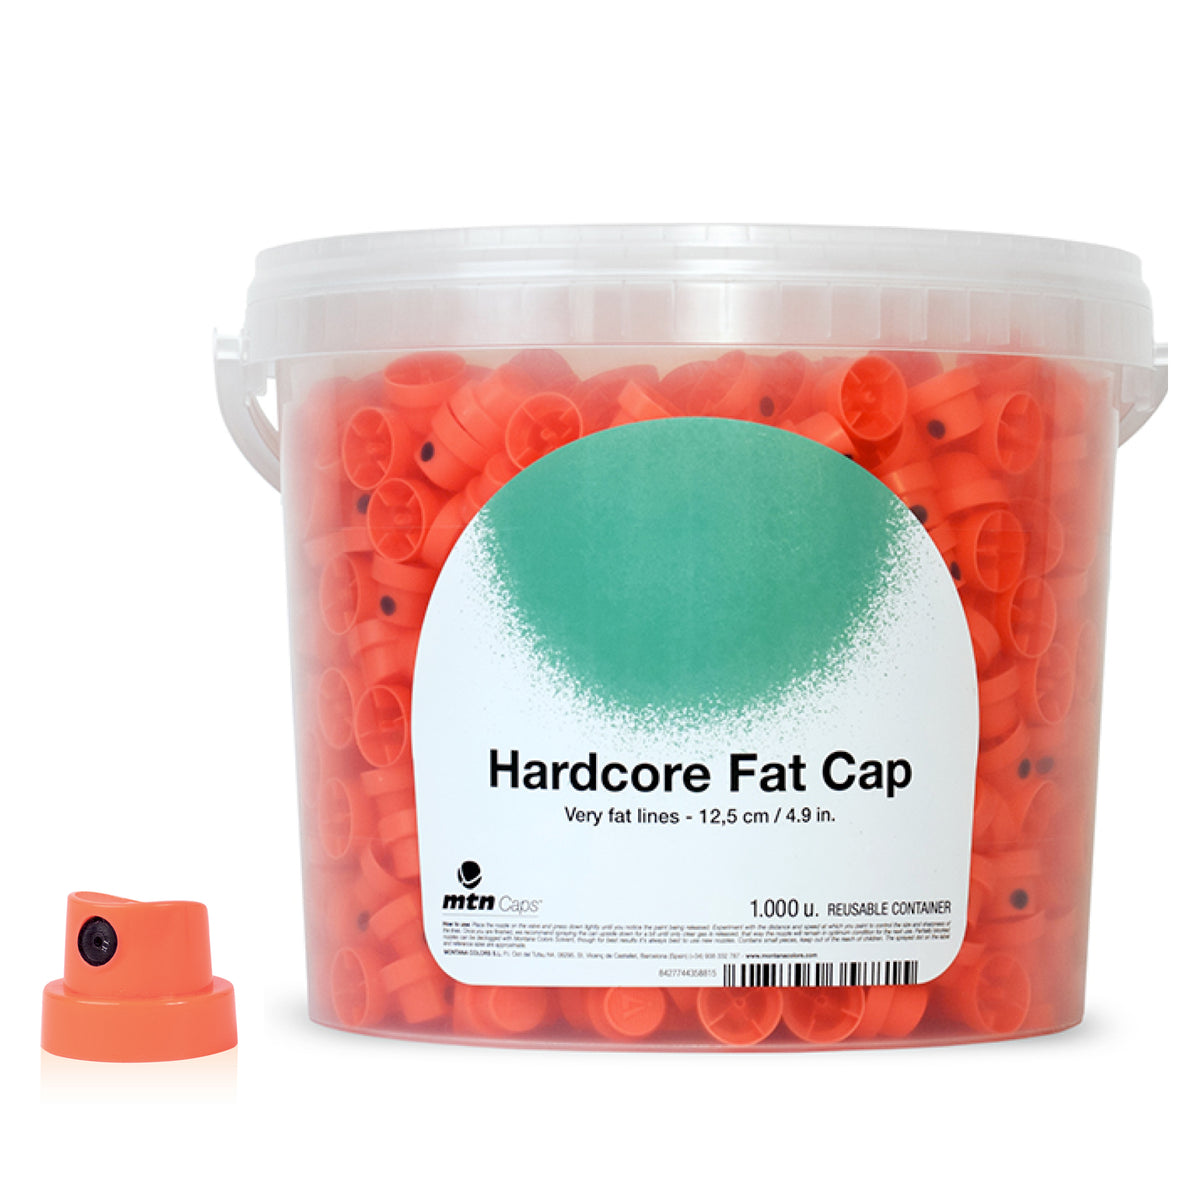 Hardcore Fat Cap